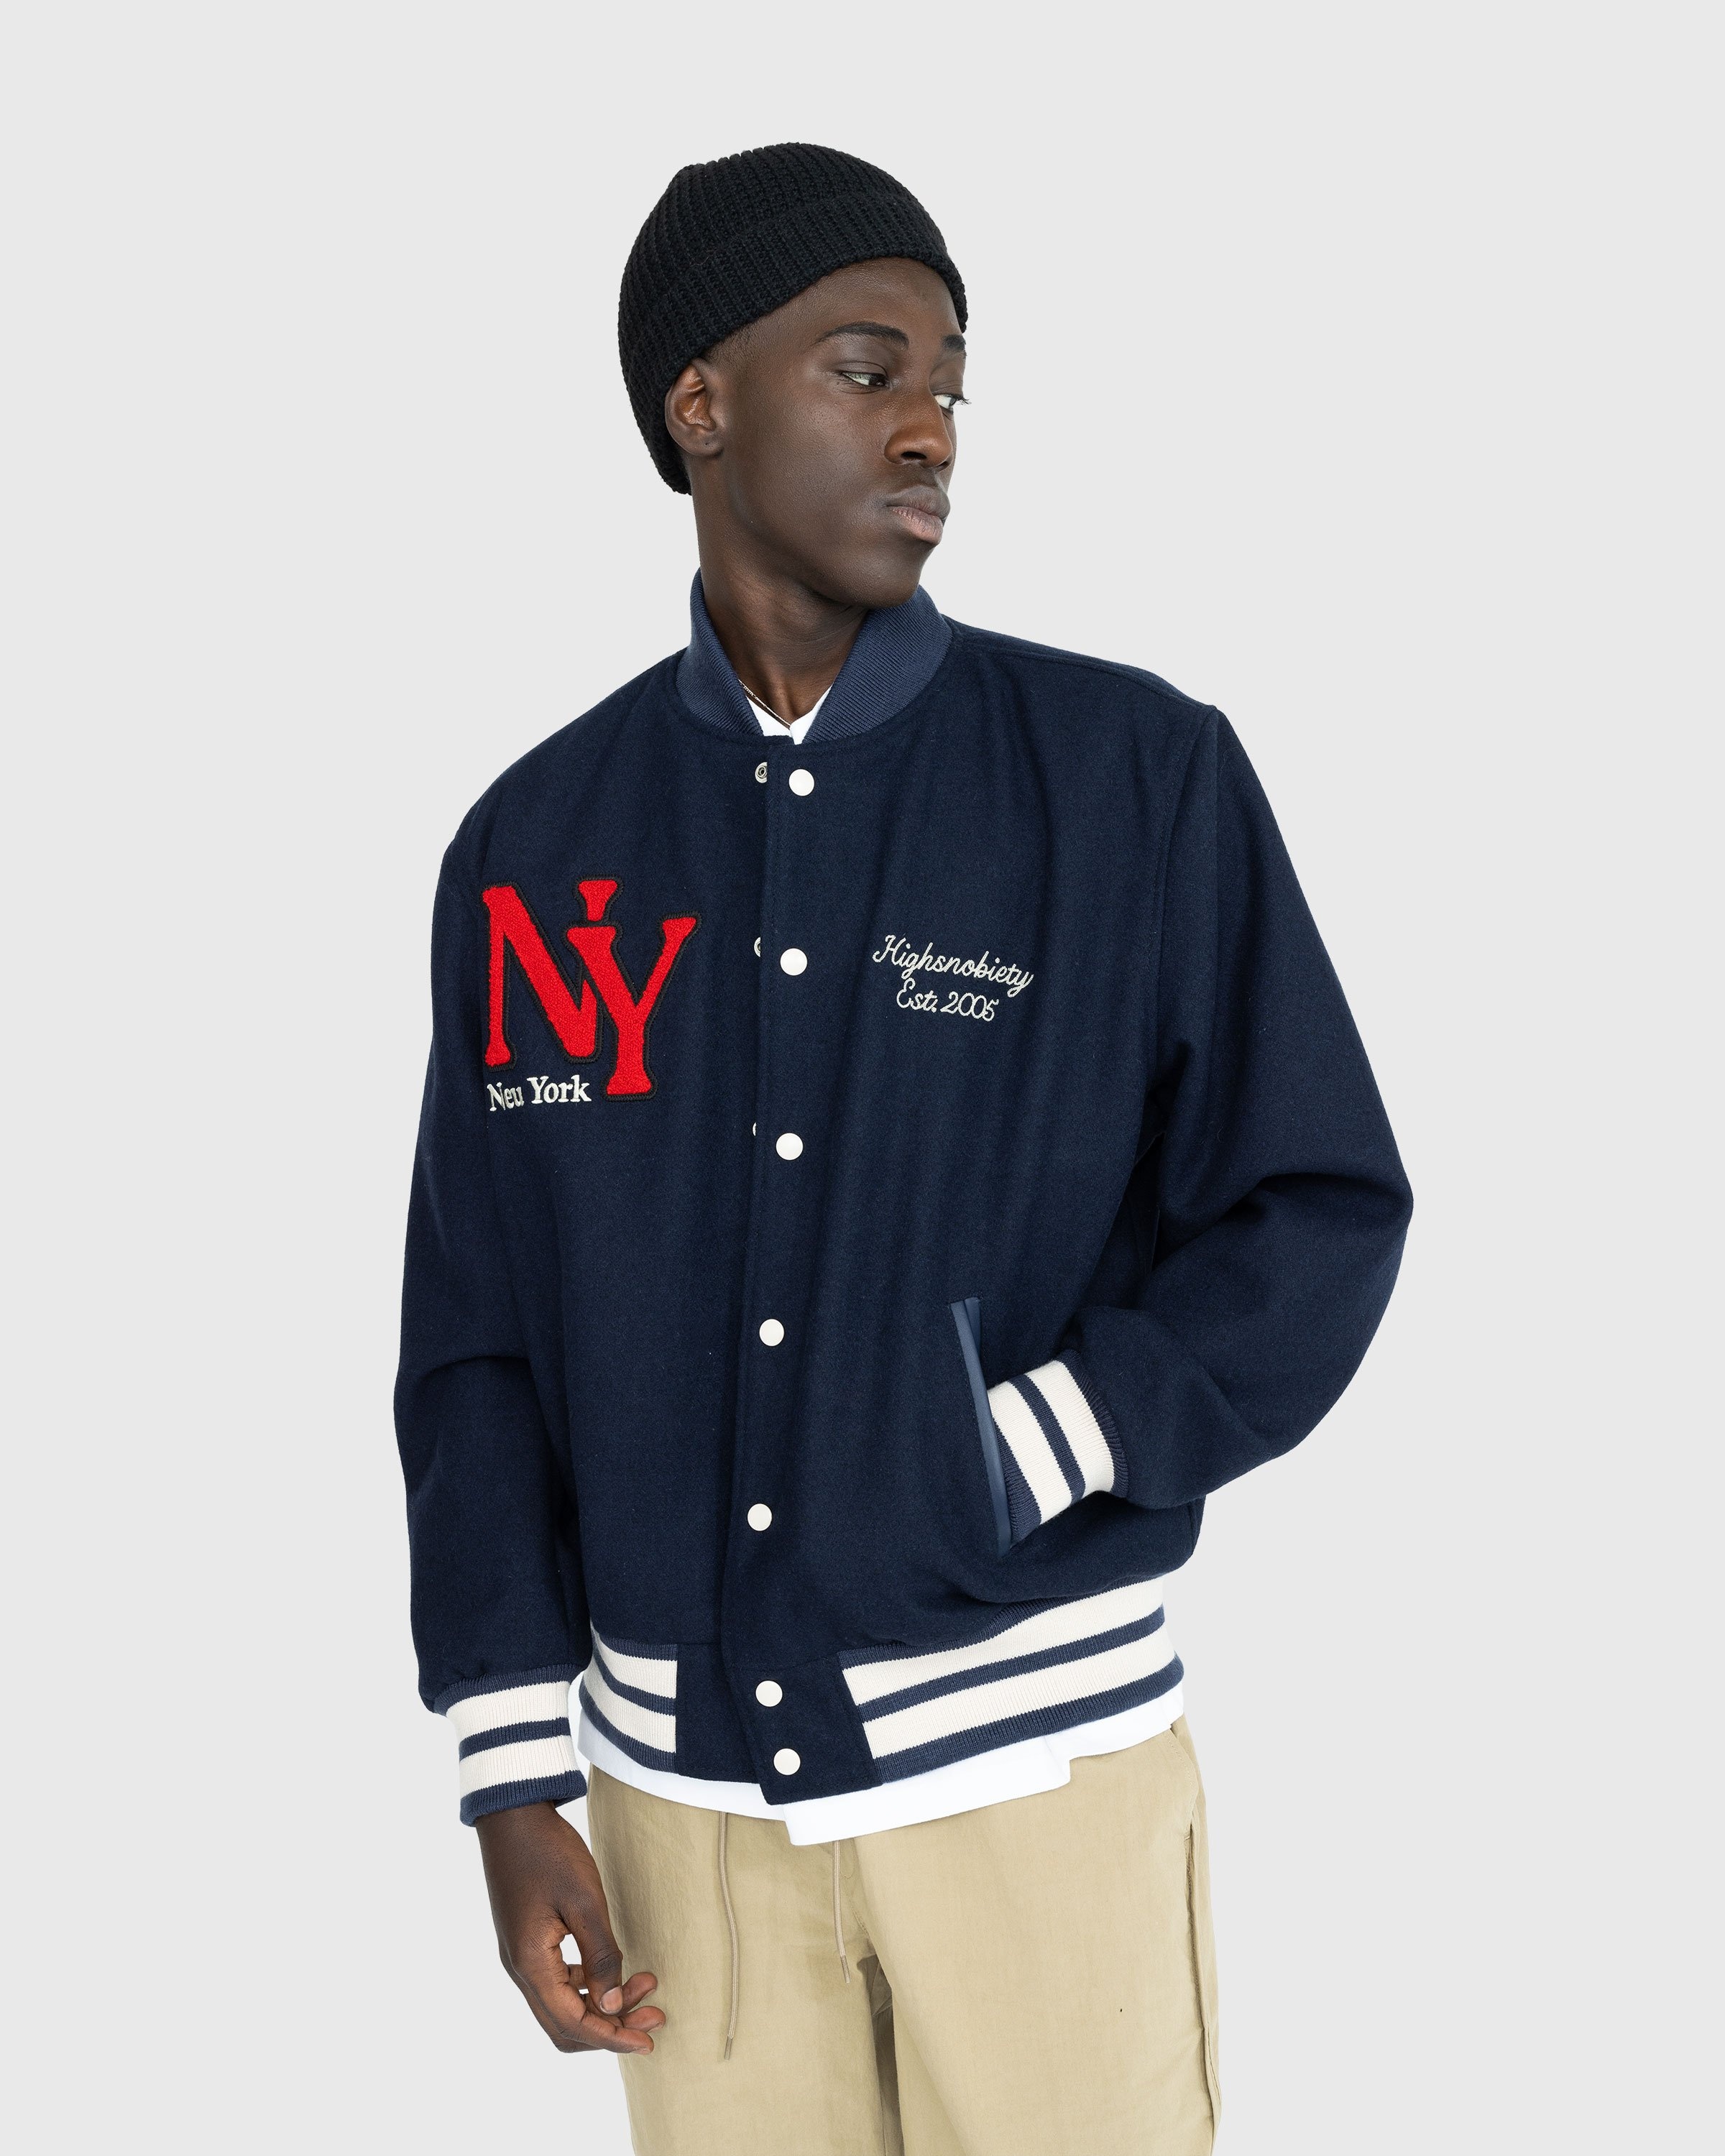 Highsnobiety – Neu York Varsity Jacket - Size XL